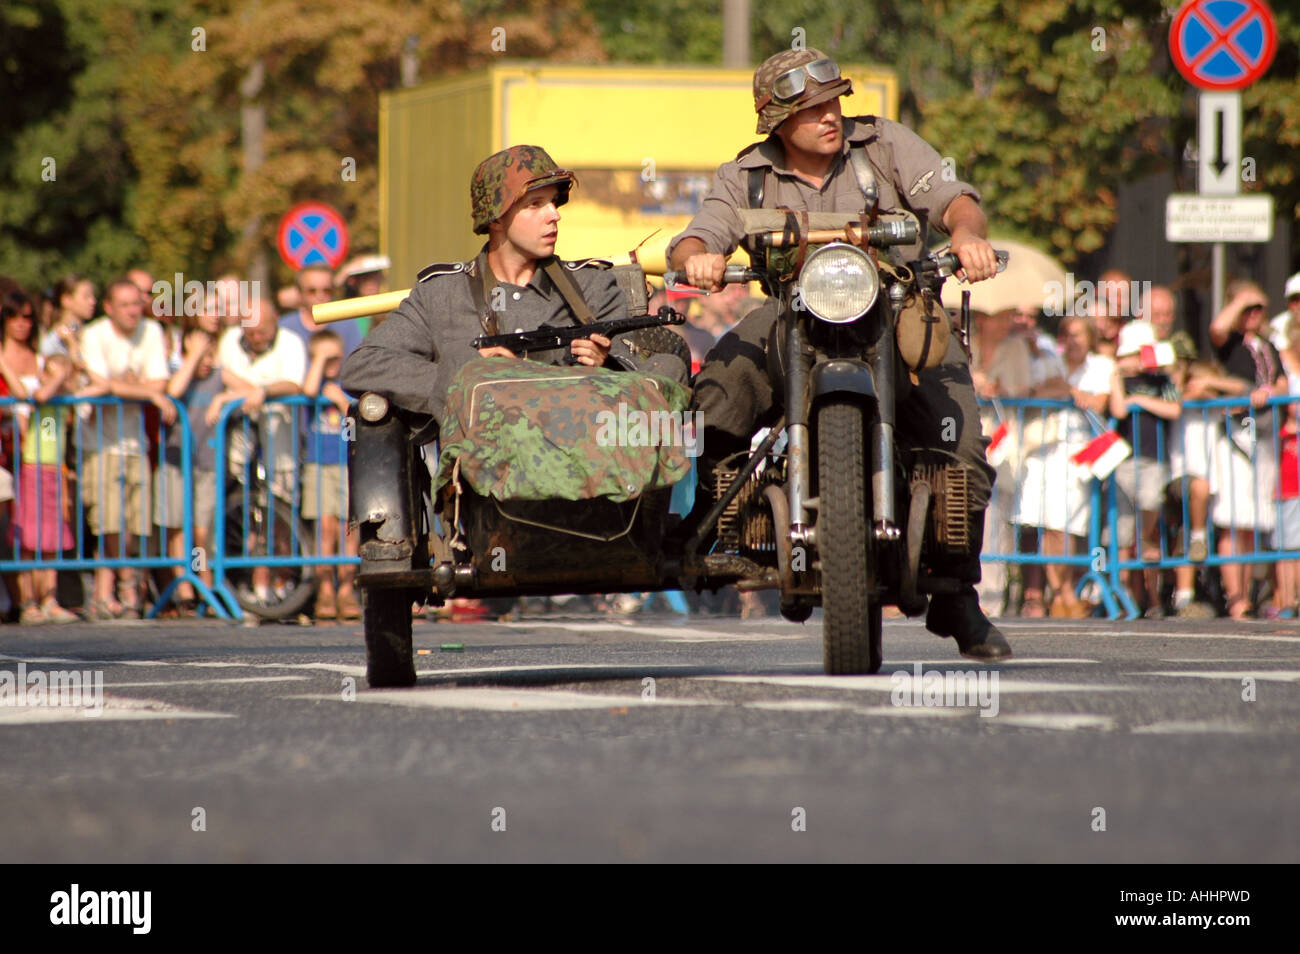 Historisches Reenactment des Warschauer Aufstandes 1944 im zweiten Weltkrieg. Mann in Nazi-Soldaten uniform im Motorrad-Kombination. Stockfoto